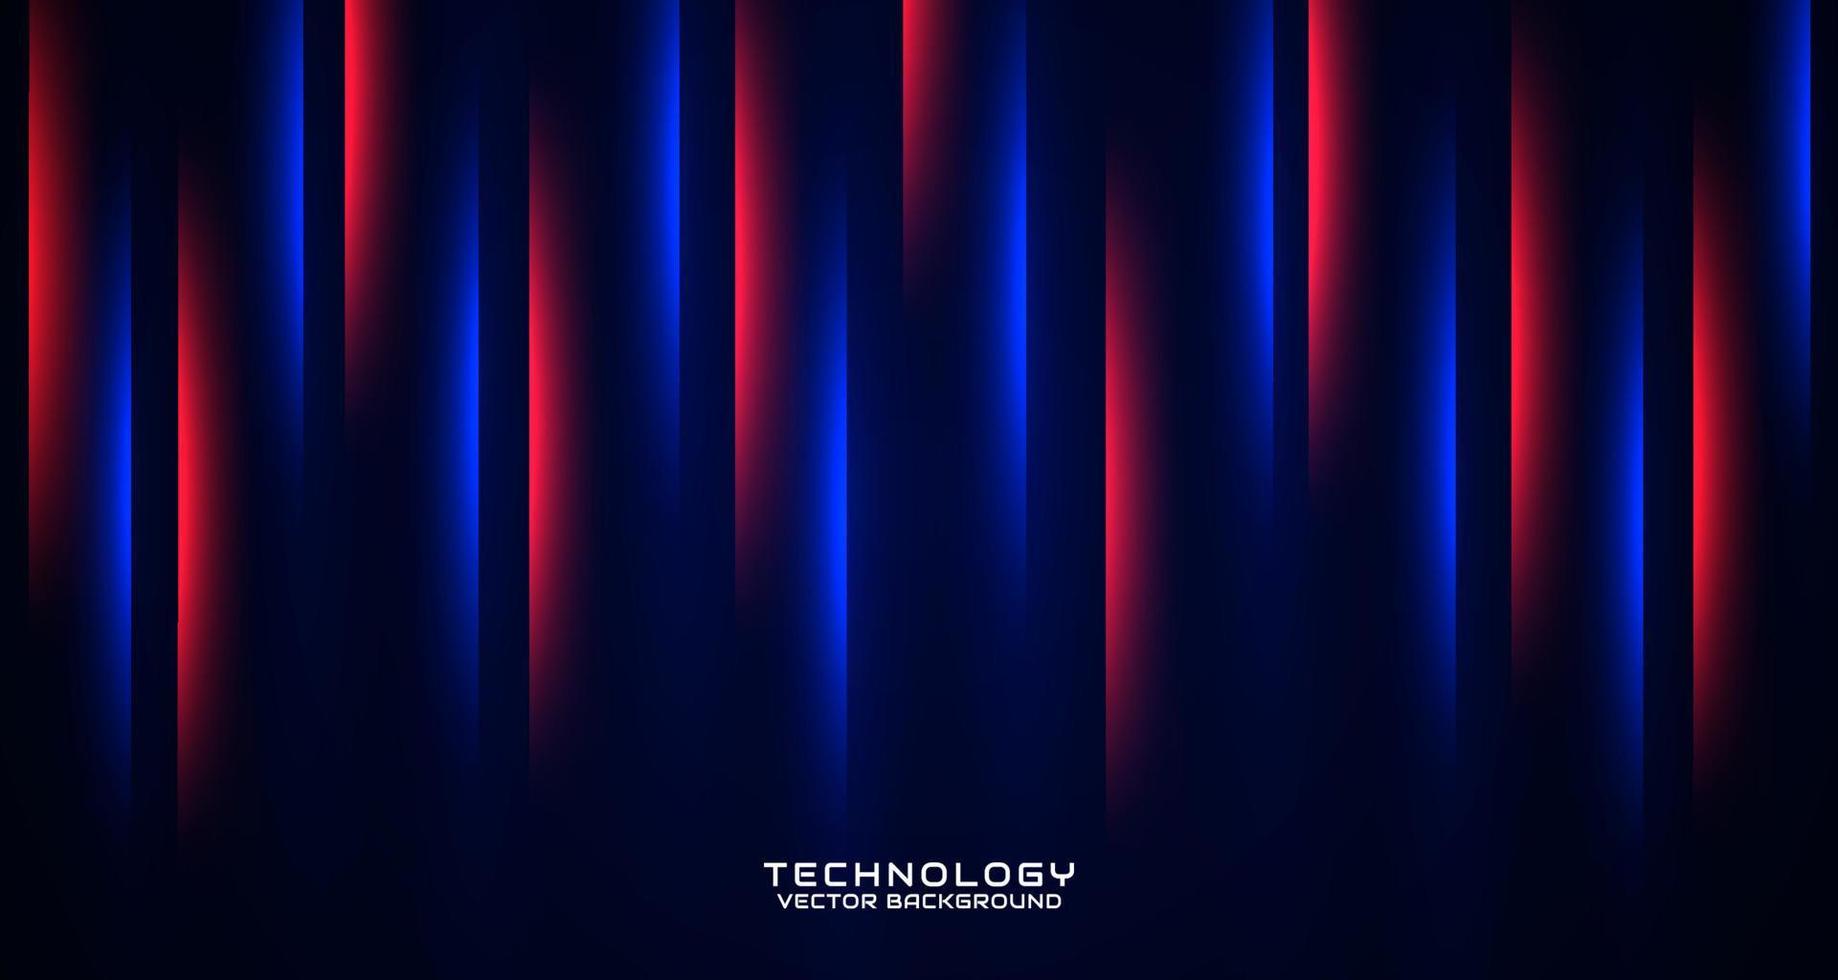 3D-Rot-Blau-Techno-Zusammenfassungshintergrund-Überlappungsschicht auf dunklem Raum mit leuchtender Effektdekoration. Stilkonzept ausgeschnitten. Grafikdesign-Element für Banner-Flyer, Karten, Broschüren-Cover oder Landing-Page vektor